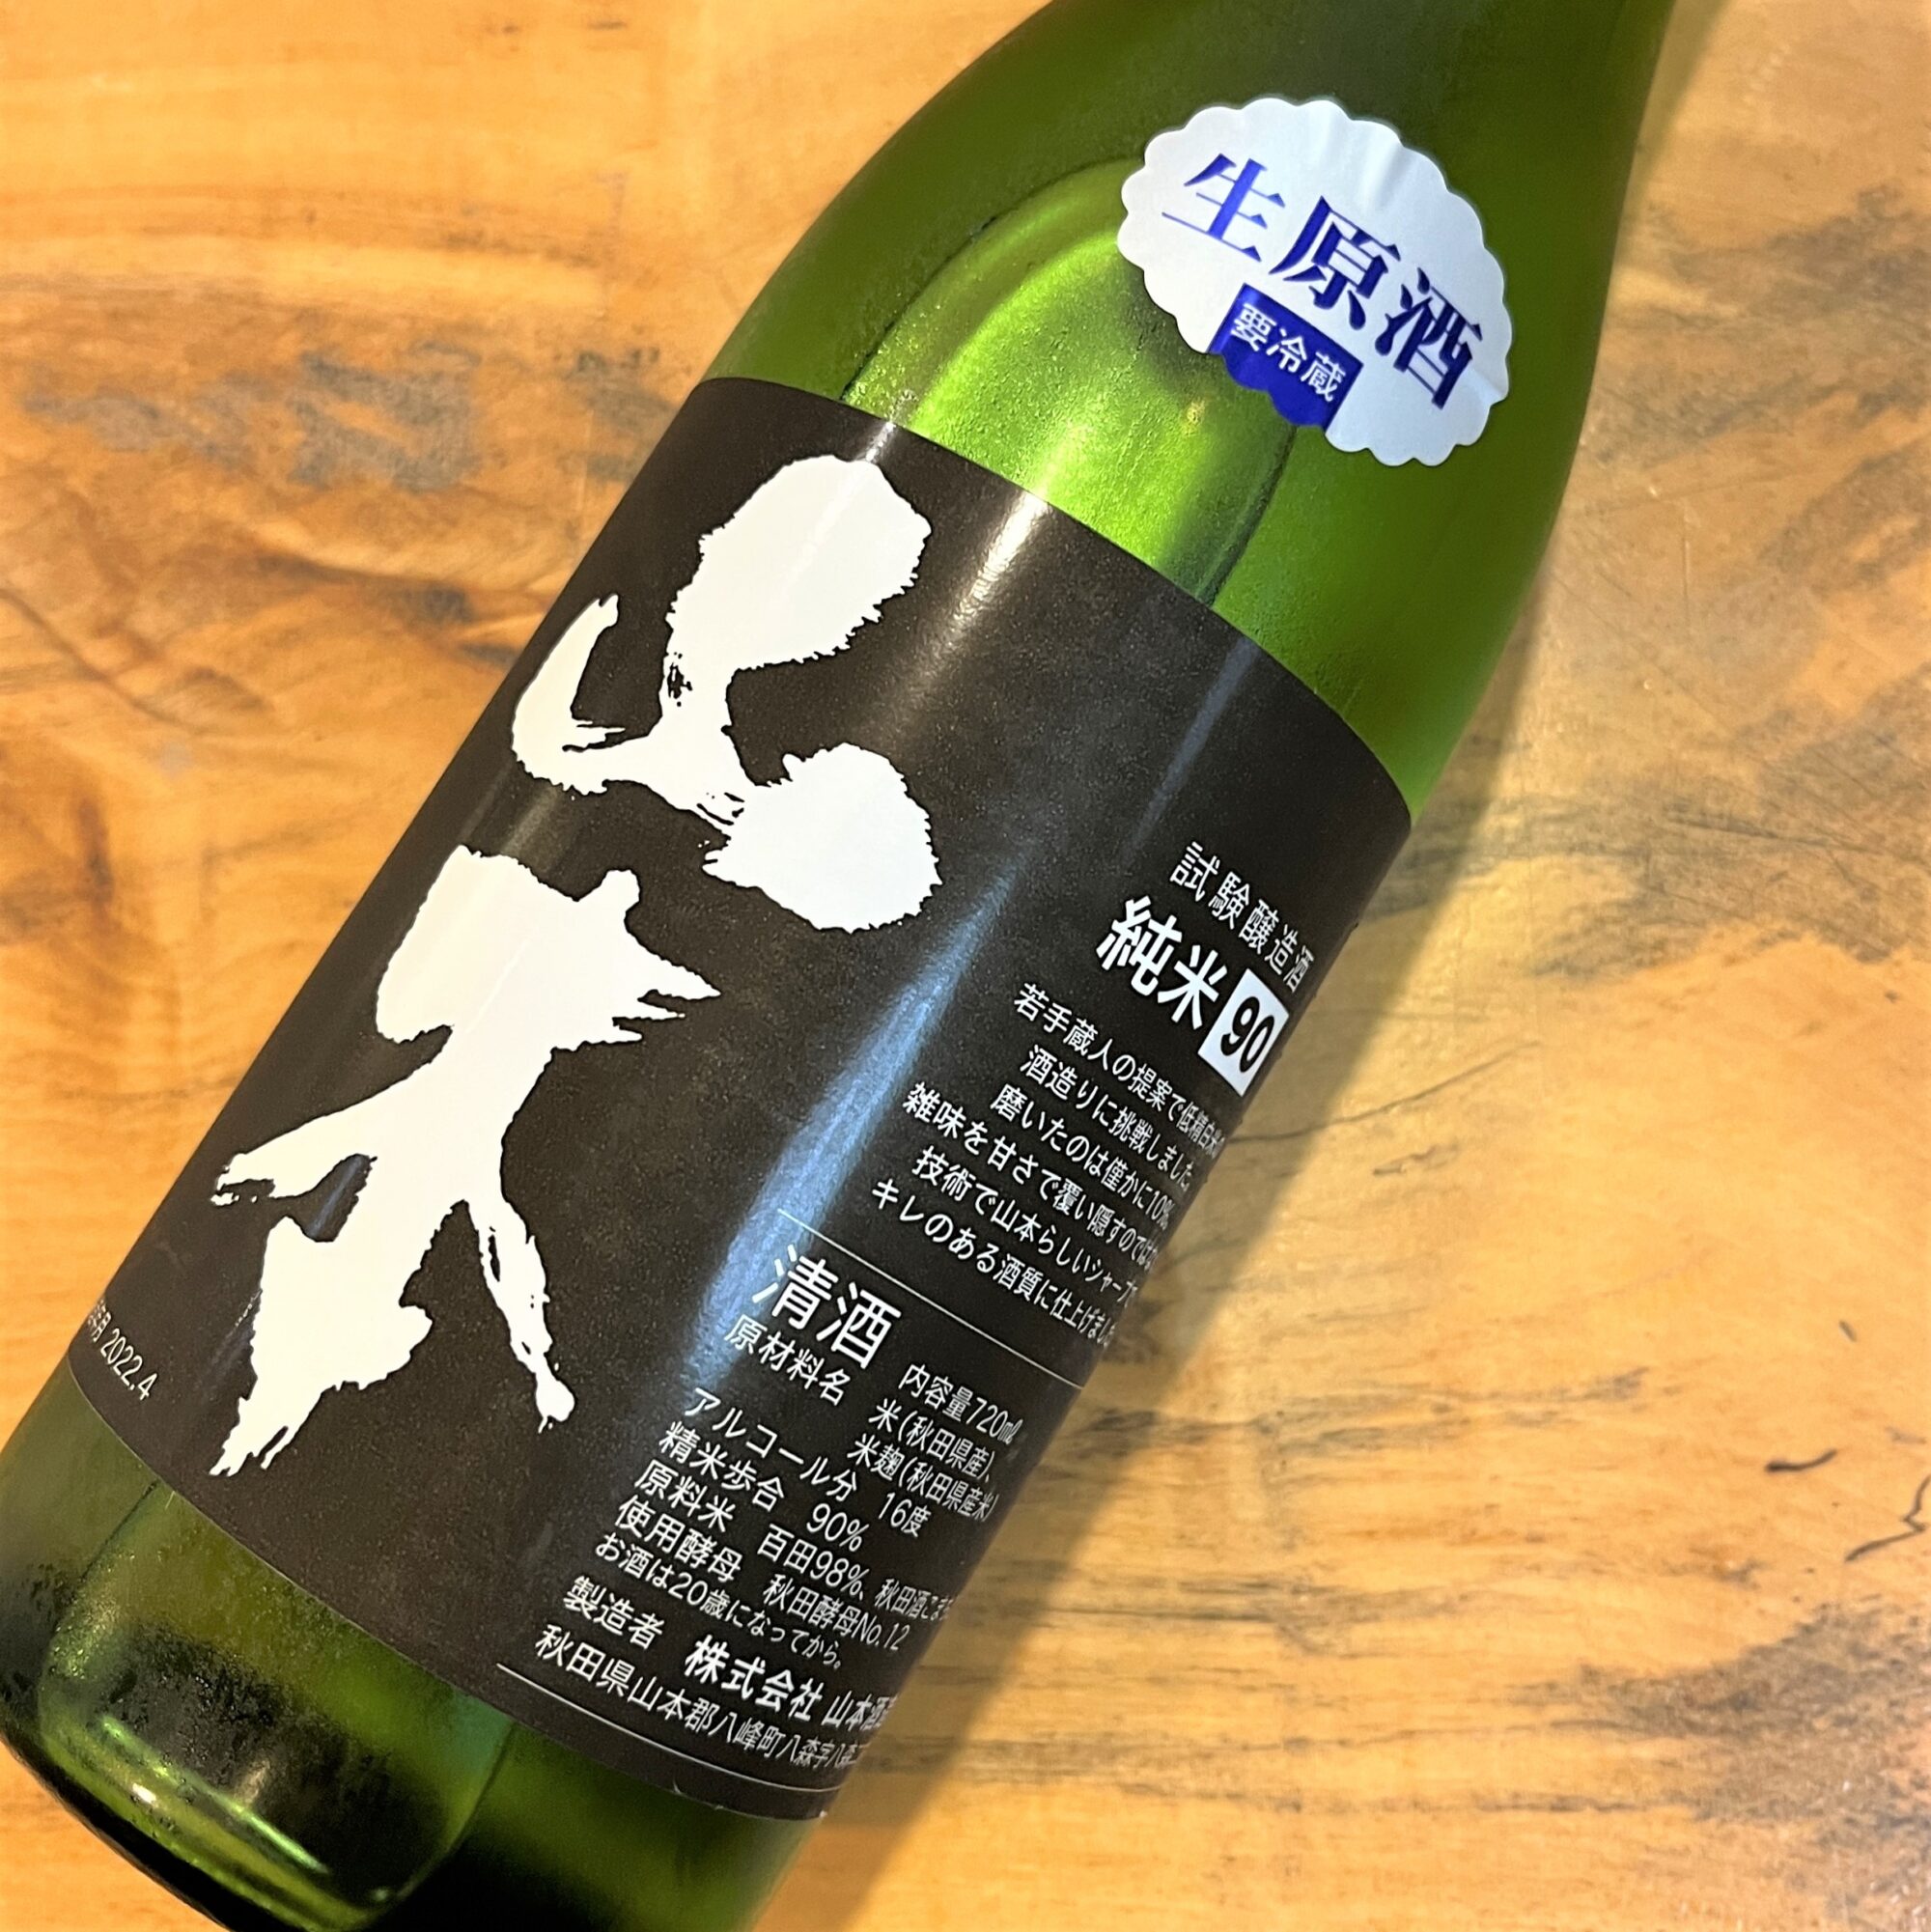 秋田 山本（やまもと）試験醸造酒 純米 90 生原酒